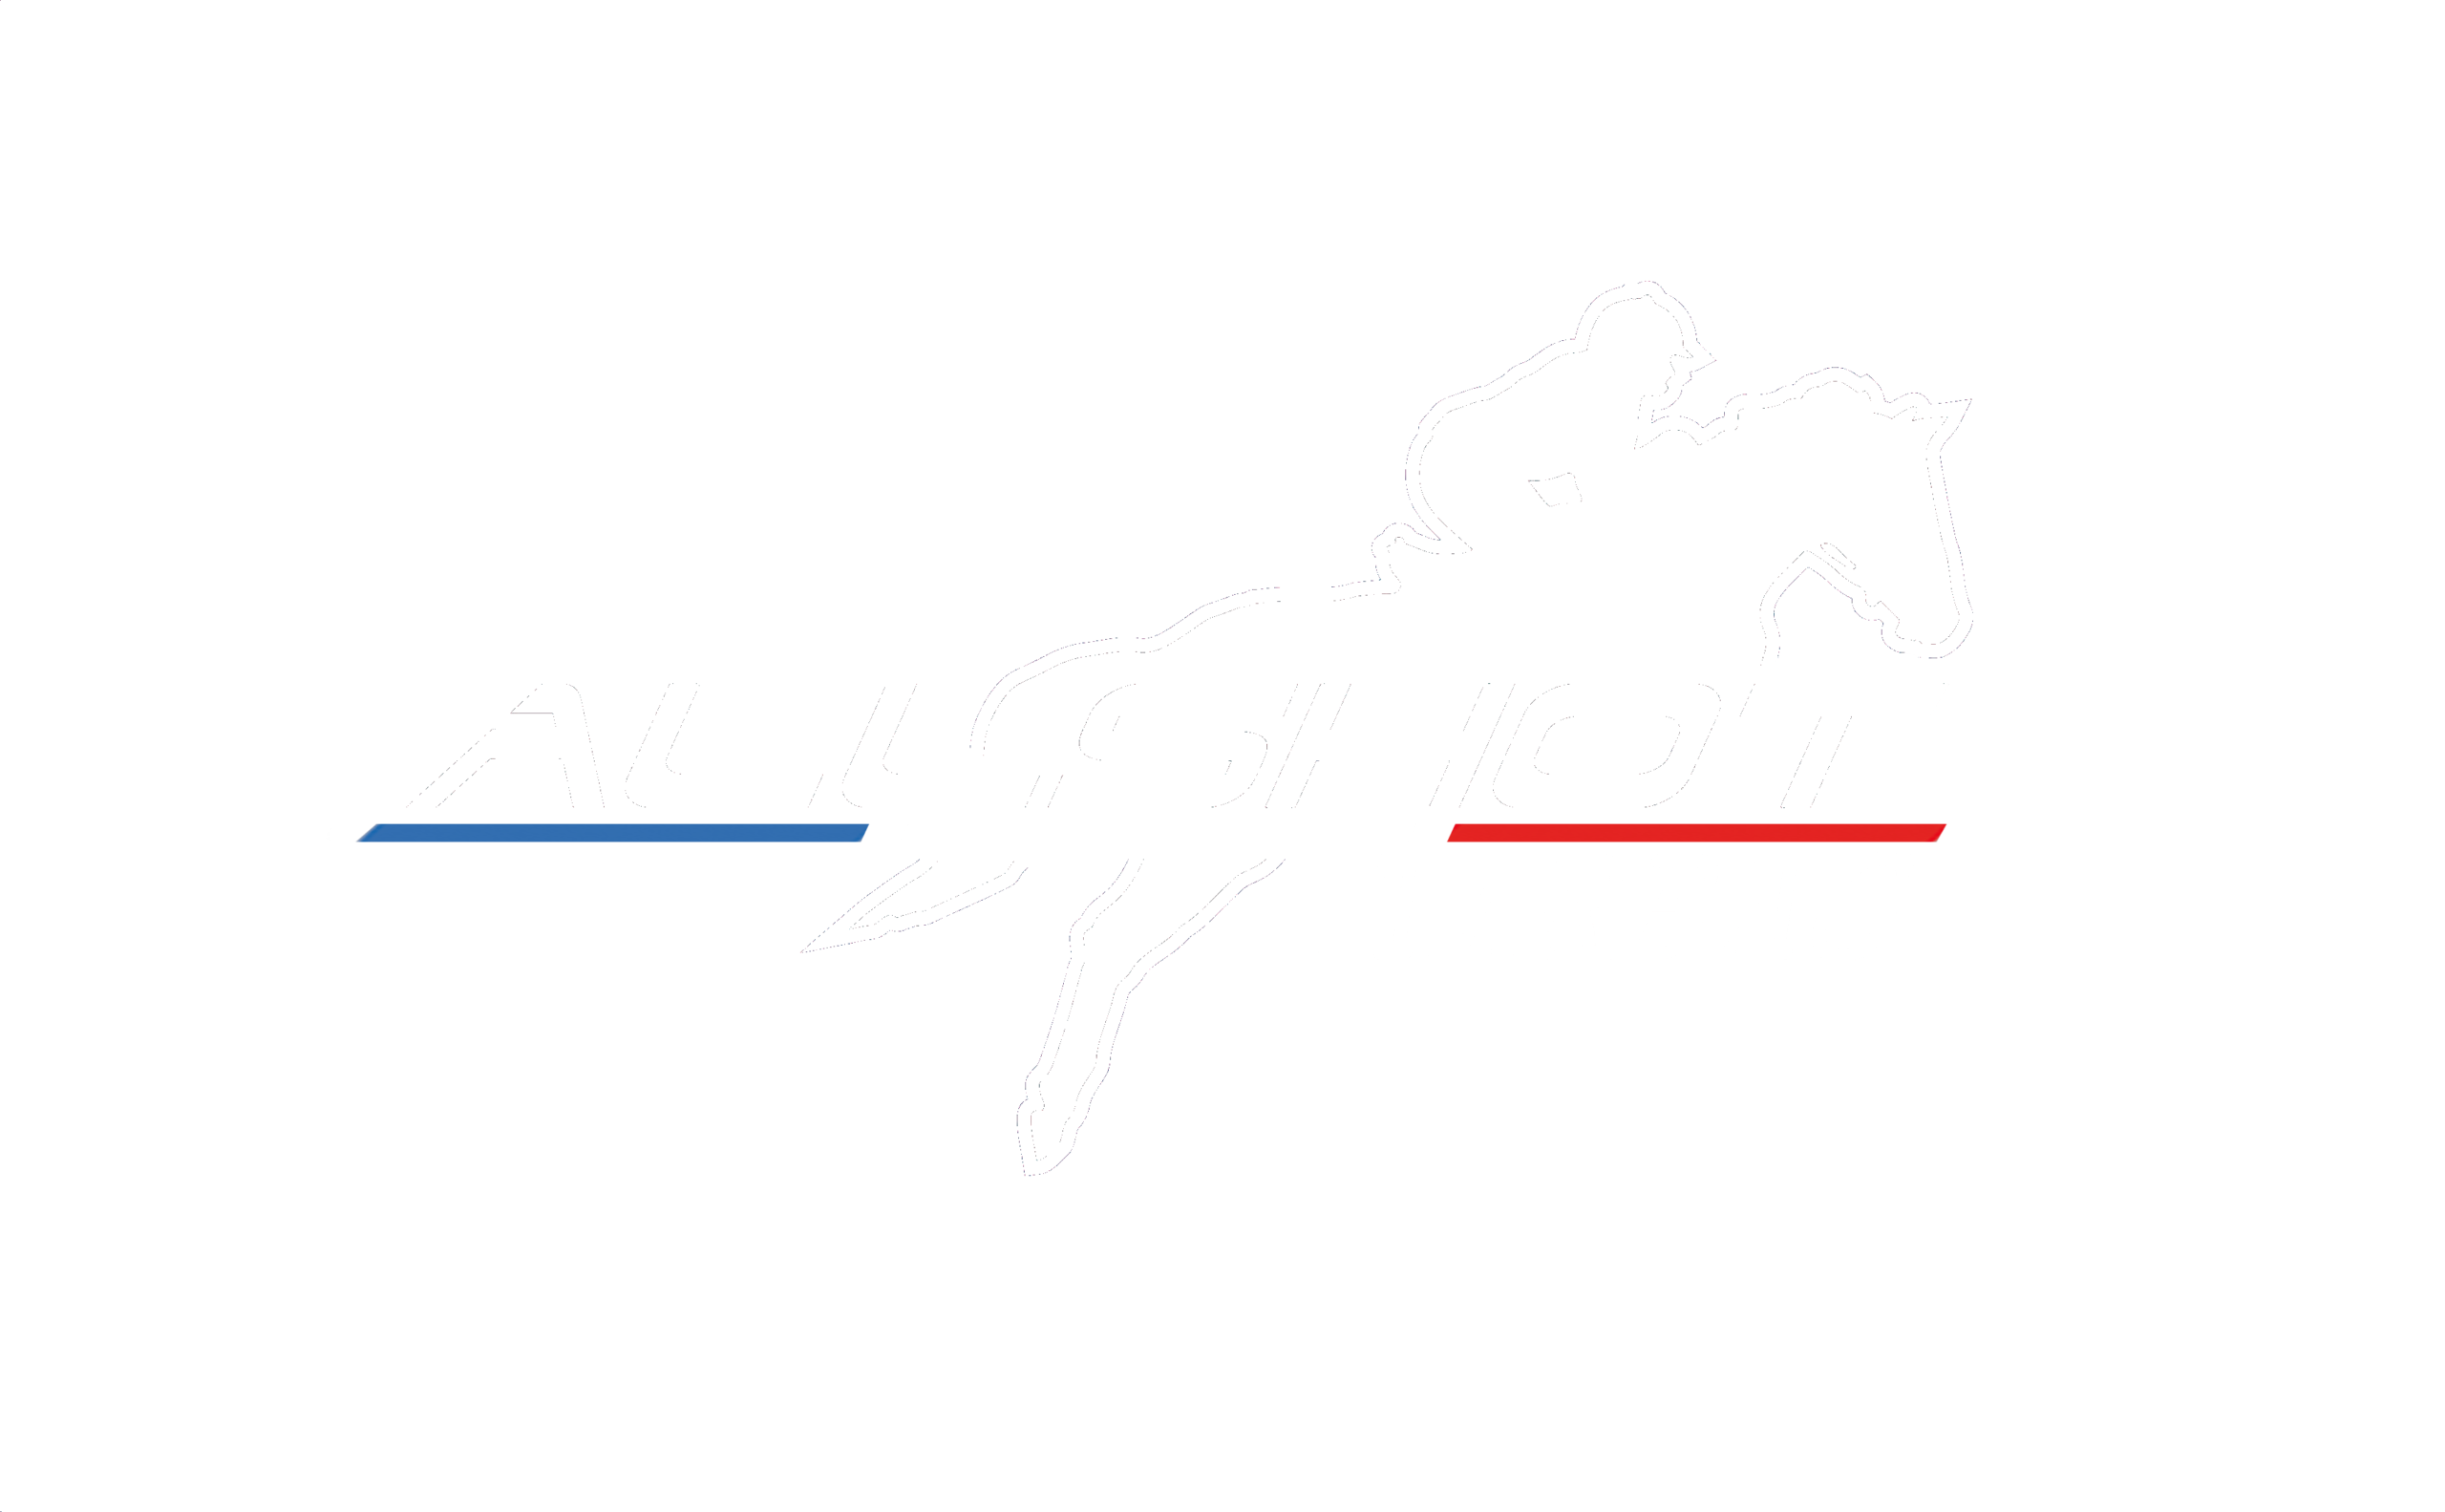 logo-allshot-airbag-equitazione-askara-gilet-protezione-pilota-equitazione